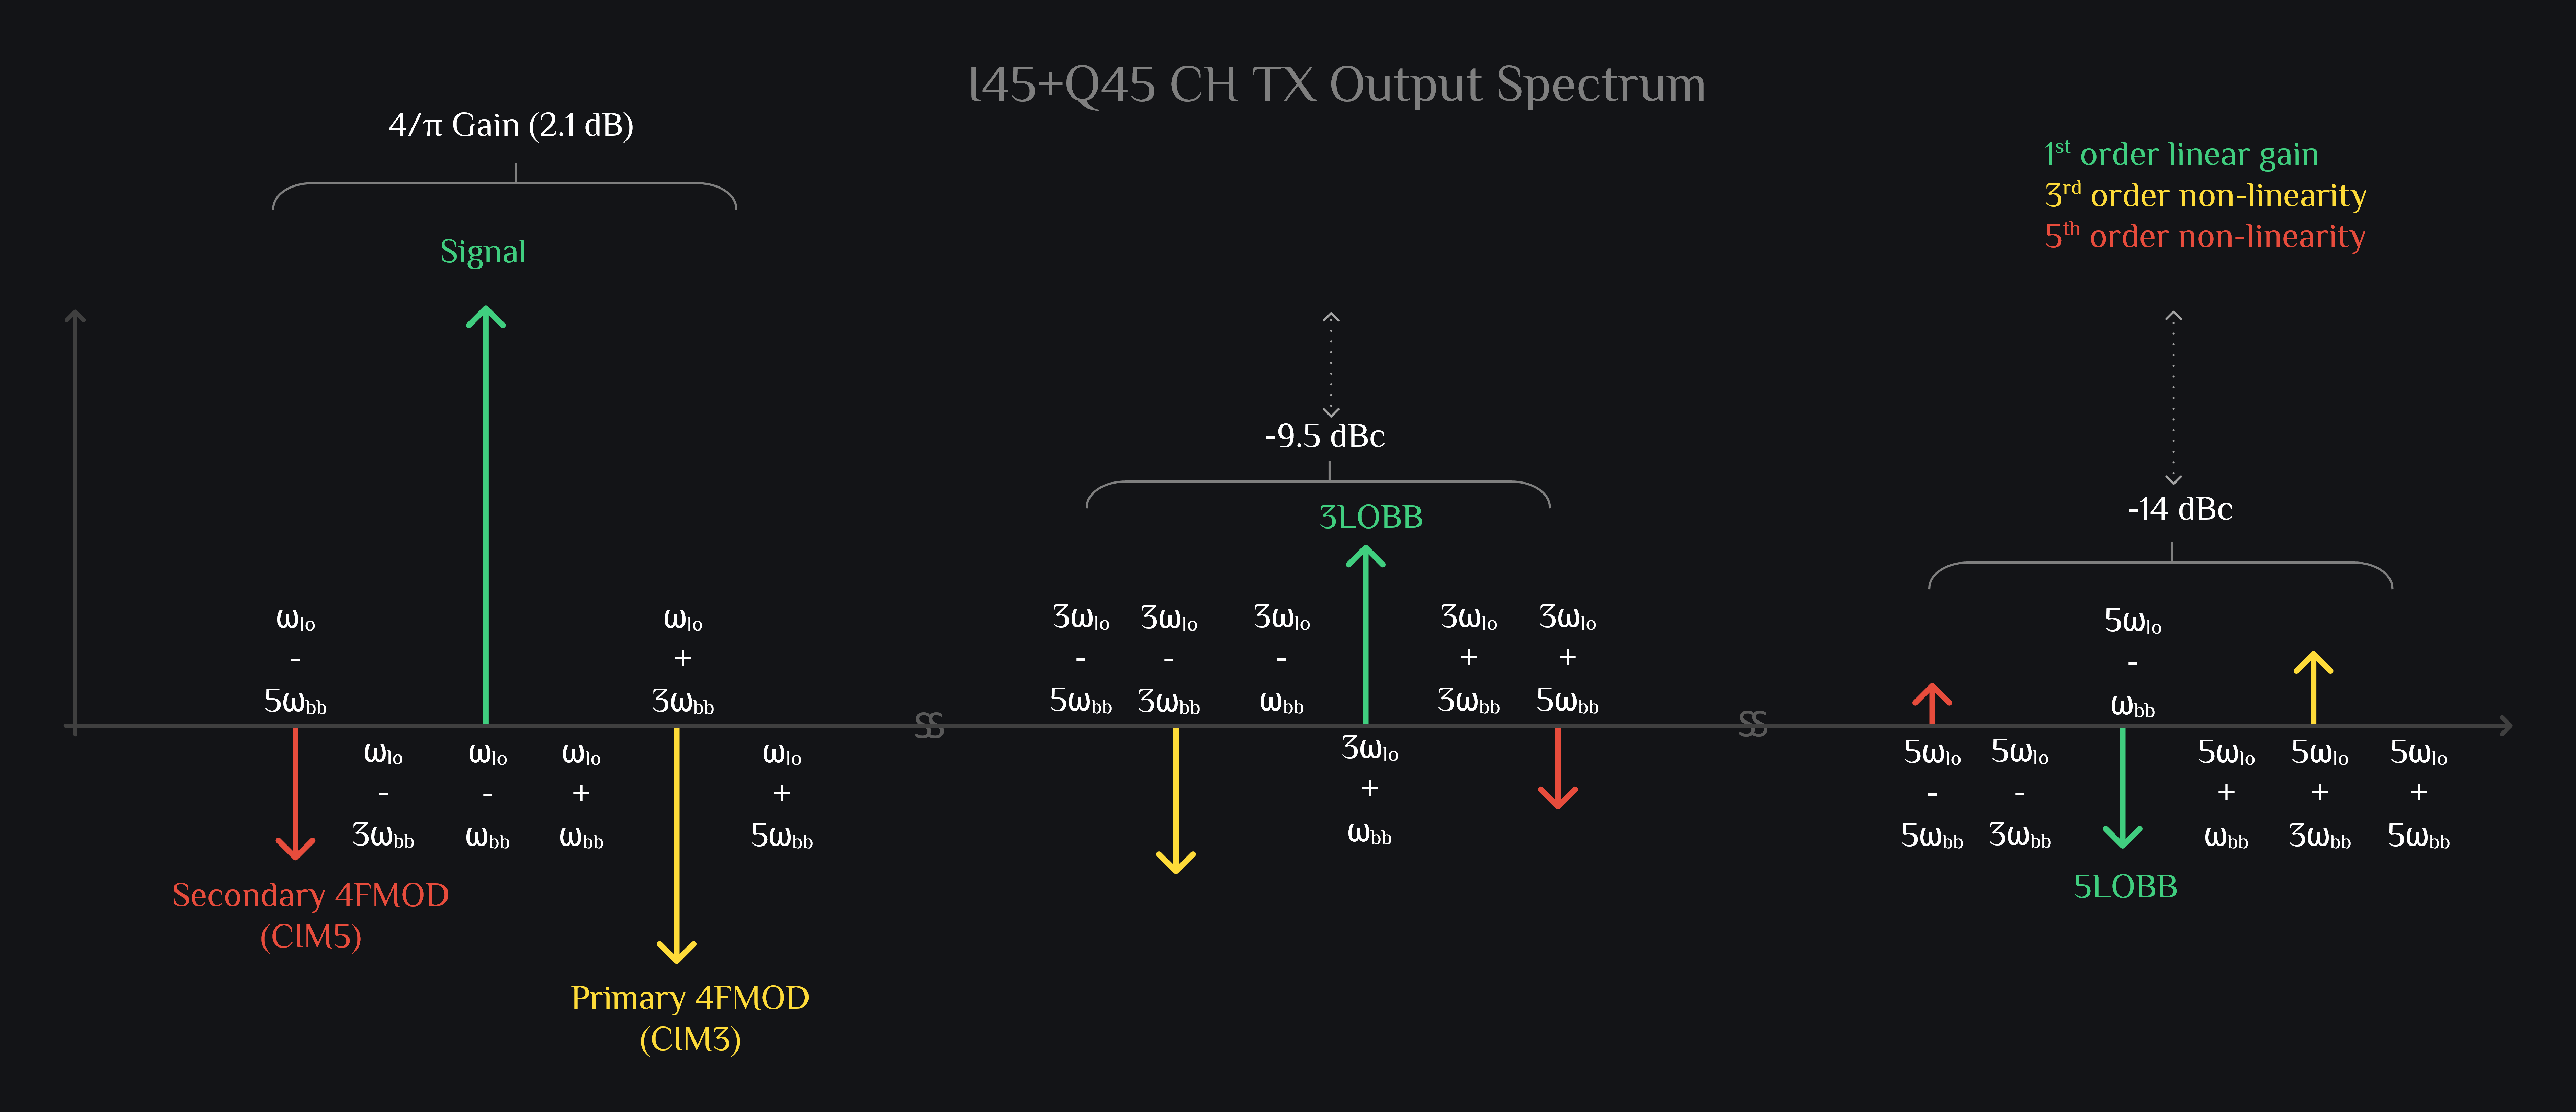 TX IQ Mixer, TX HRM Mixer, I45+Q45 channel